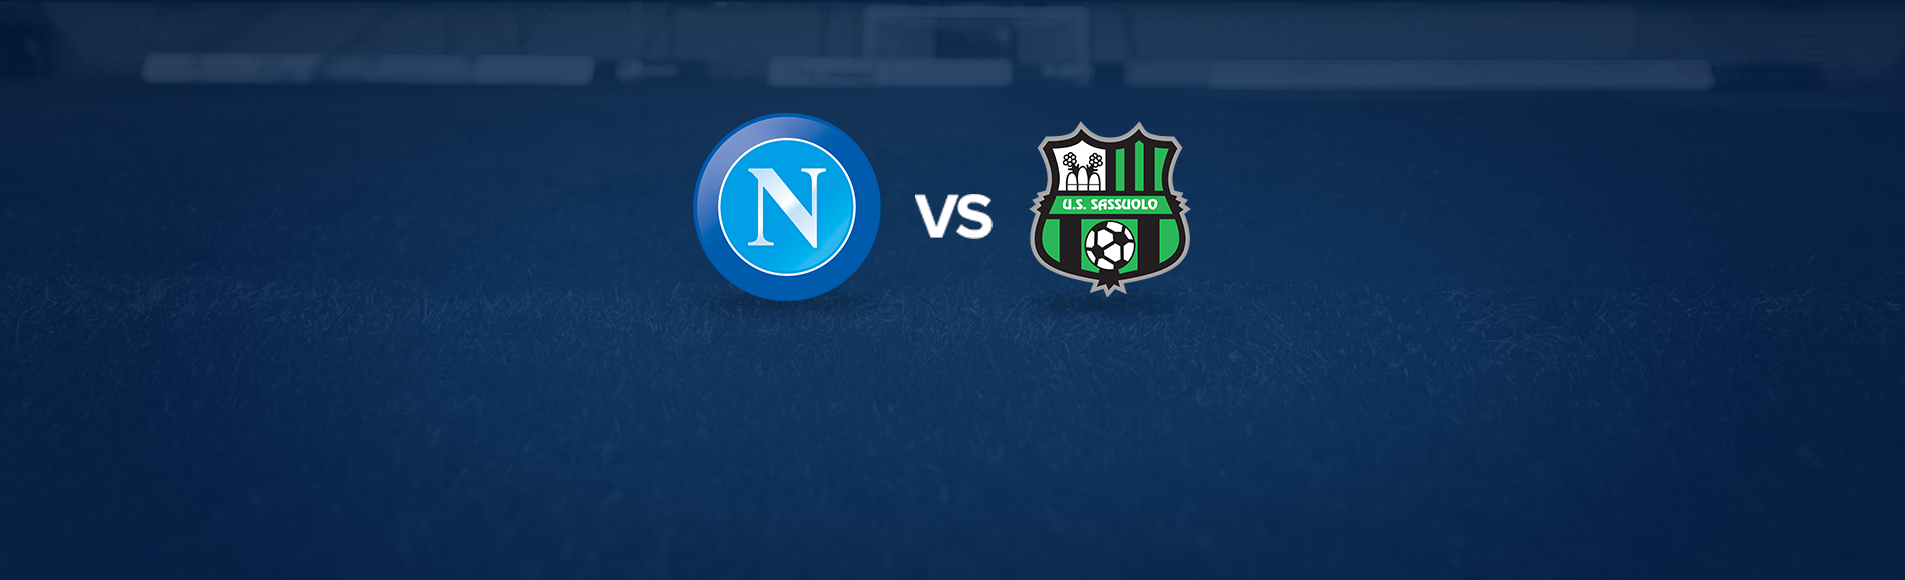 Napoli-Sassuolo: dove vedere la partita in tv e diretta streaming - NAPOLI CALCIO